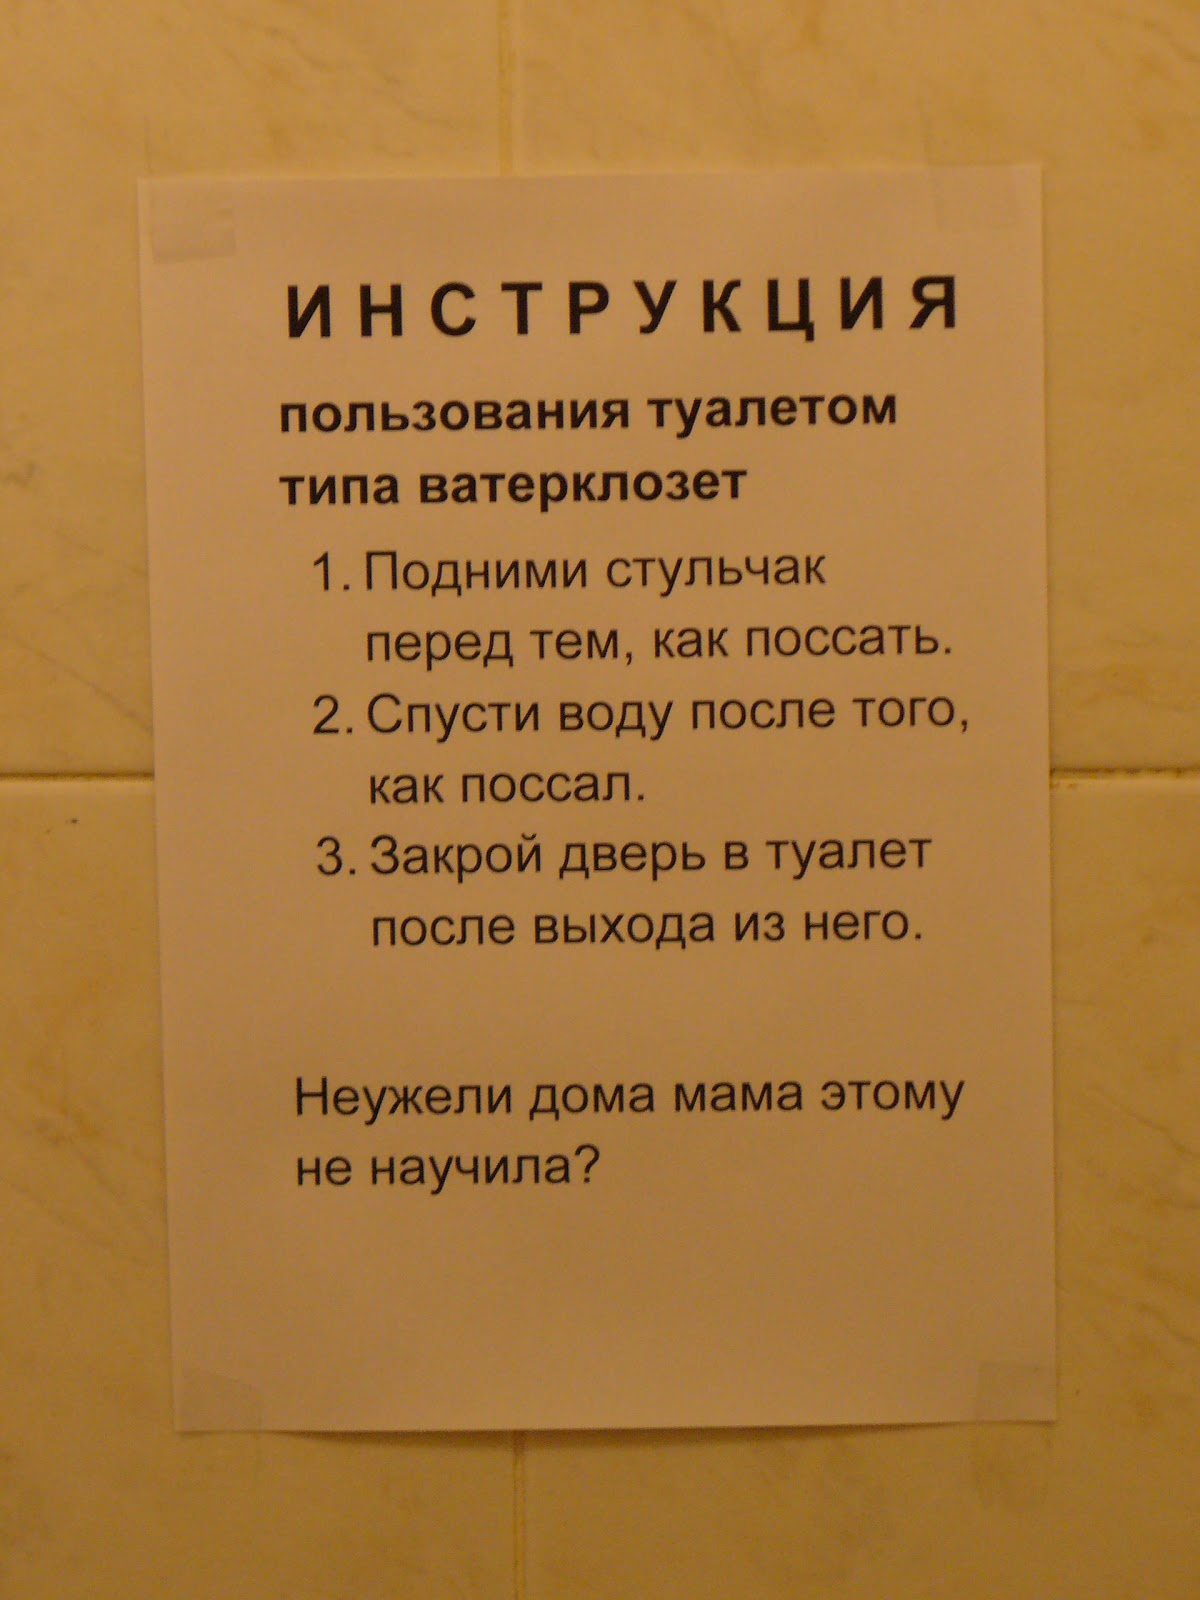 Инструкция Пользования Туалетом В Стихах